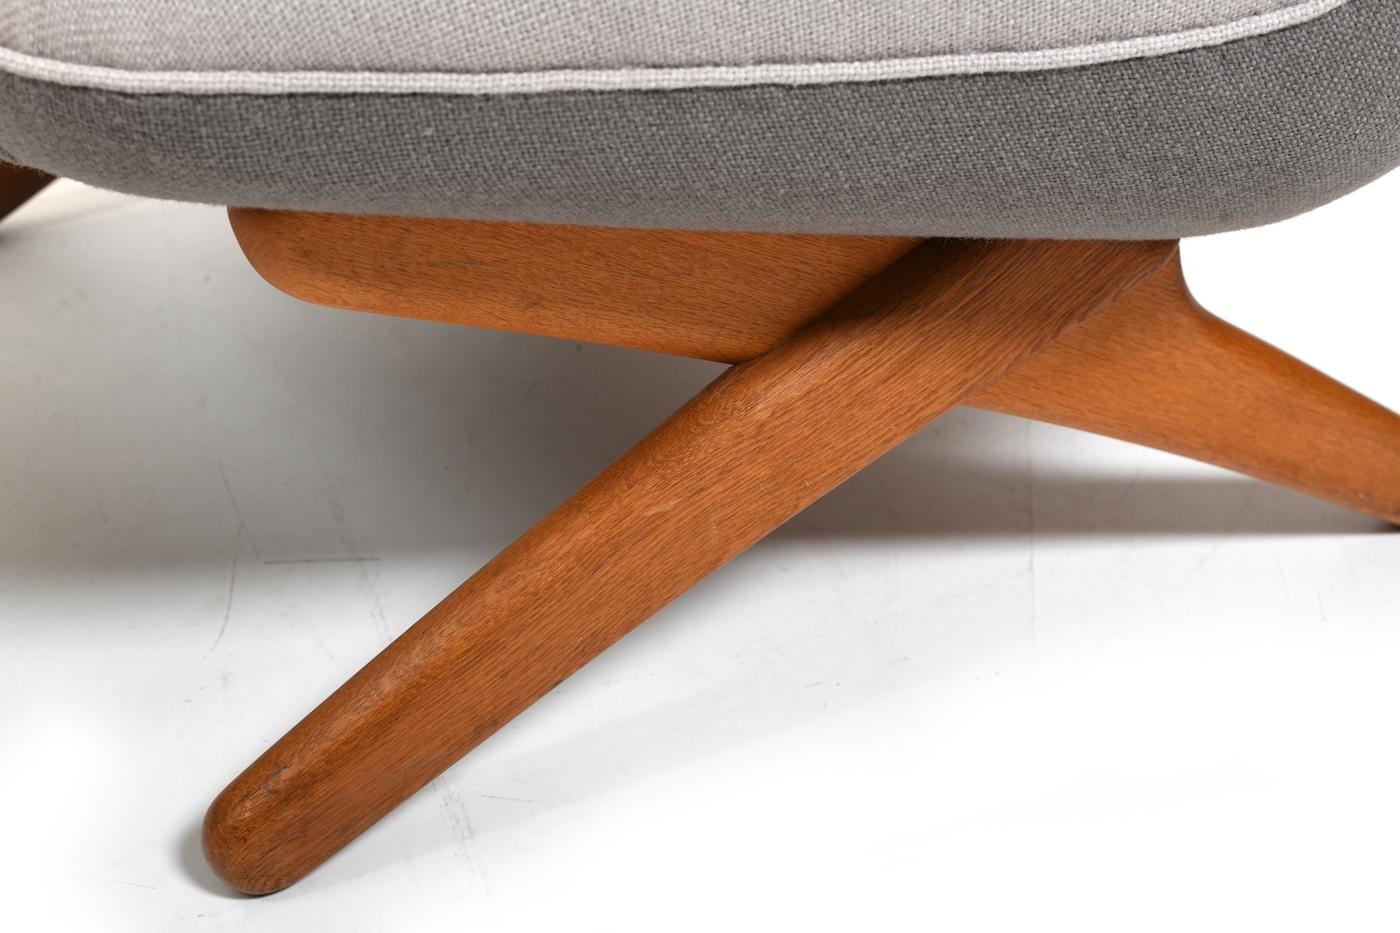 Fabric Illum Wikkelsø Lounge Chair Model 'ML91' 1950s / New Upholstered! For Sale